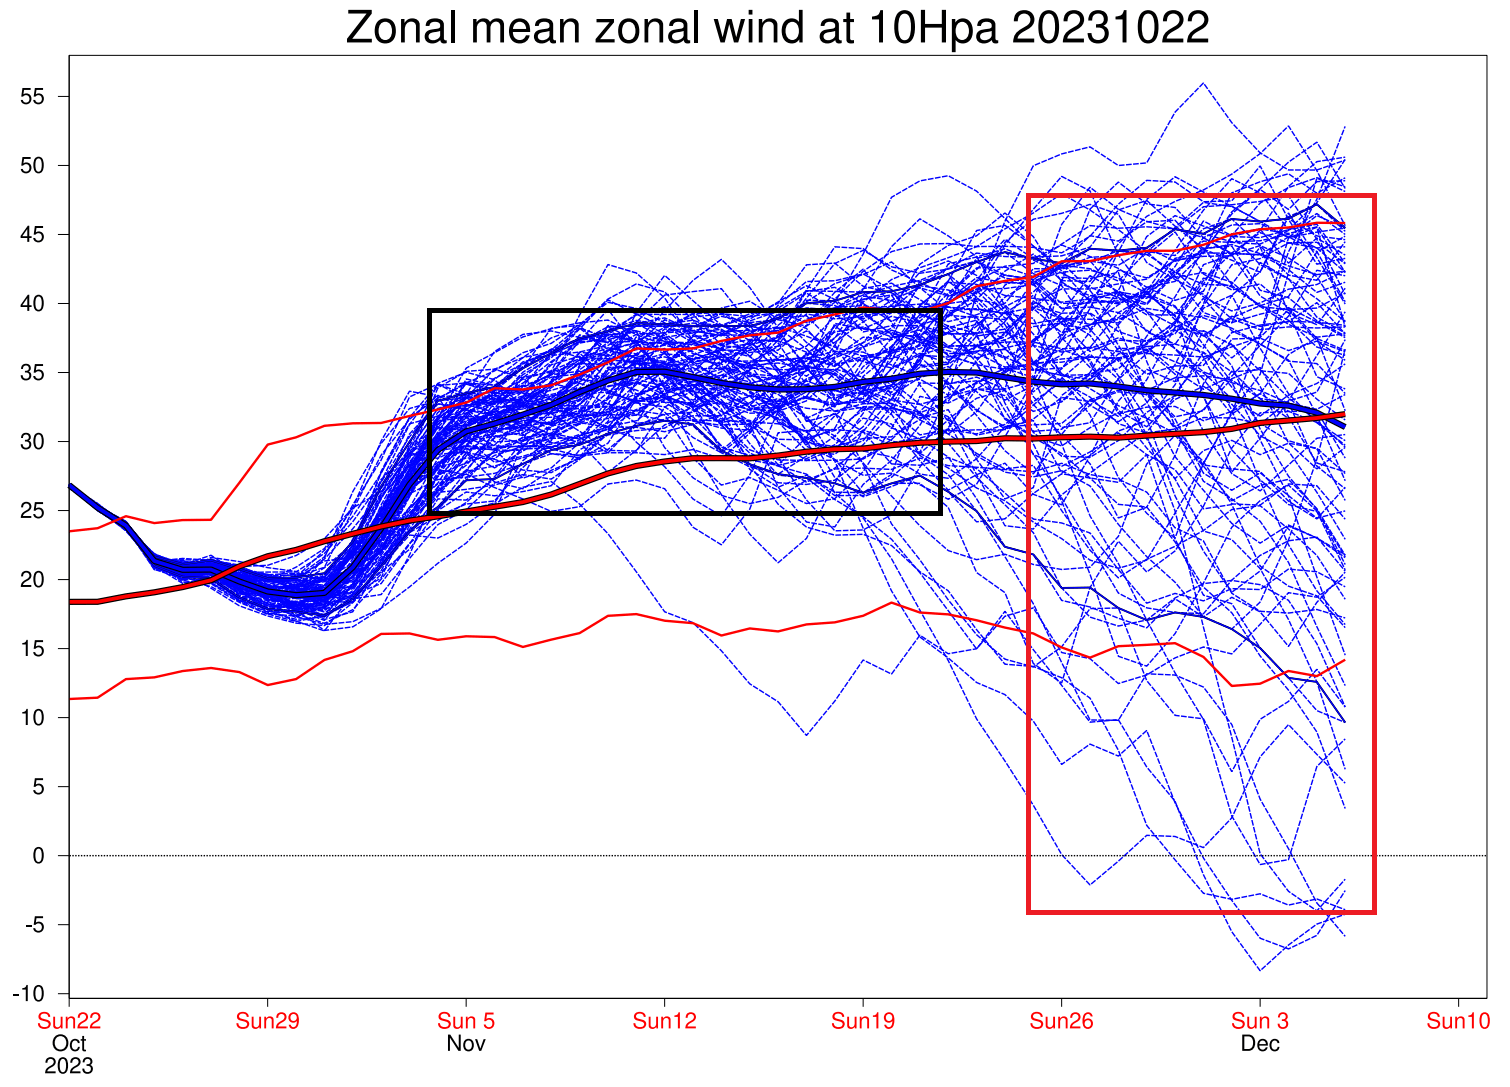 winter-polar-vortex-wind-speed-ecmwf-ensemble-forecast-extended-outlook